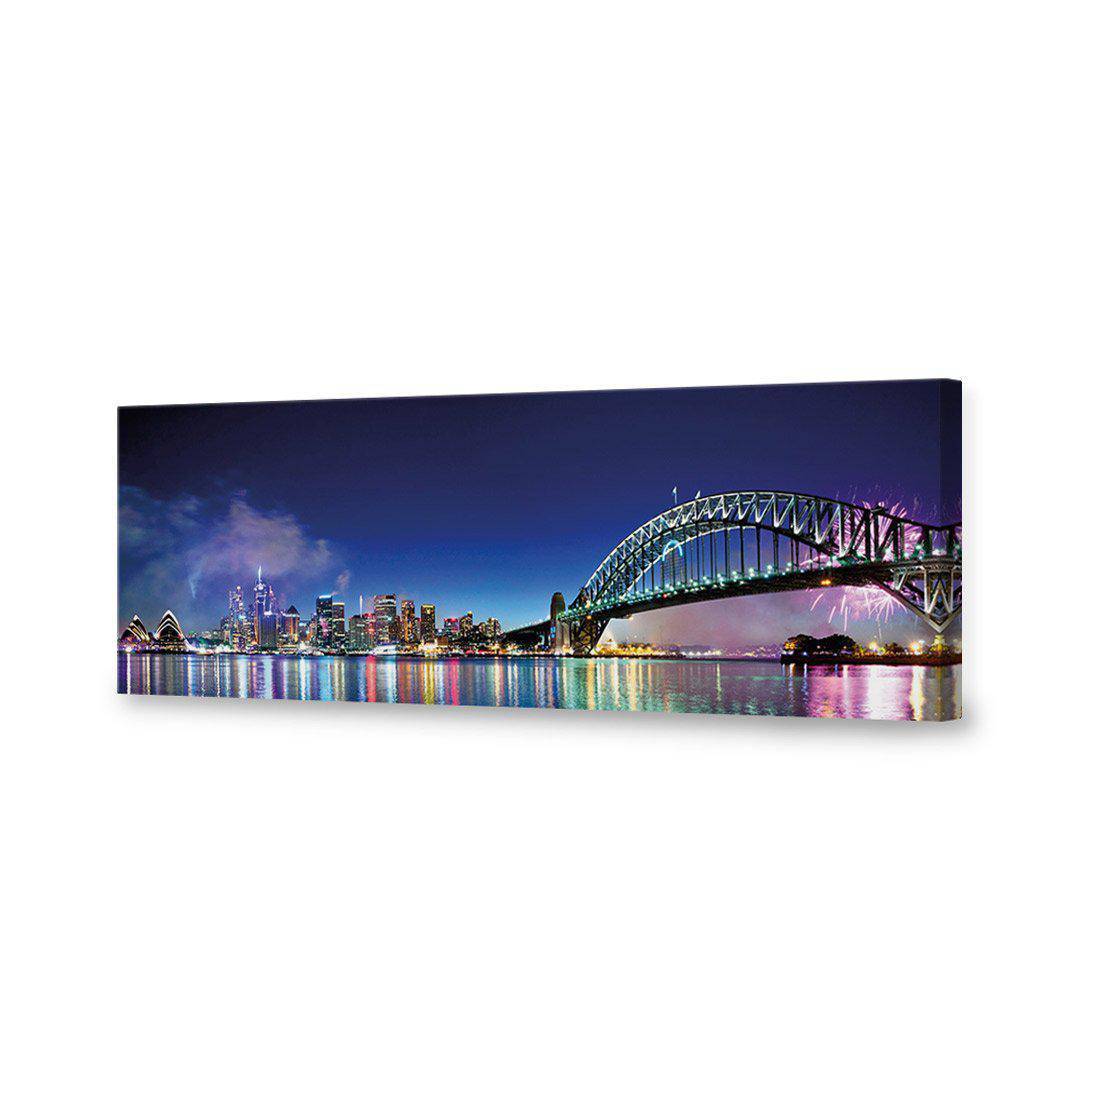 Sydney Celebration Canvas Art-Canvas-Wall Art Designs-60x20cm-Canvas - No Frame-Wall Art Designs